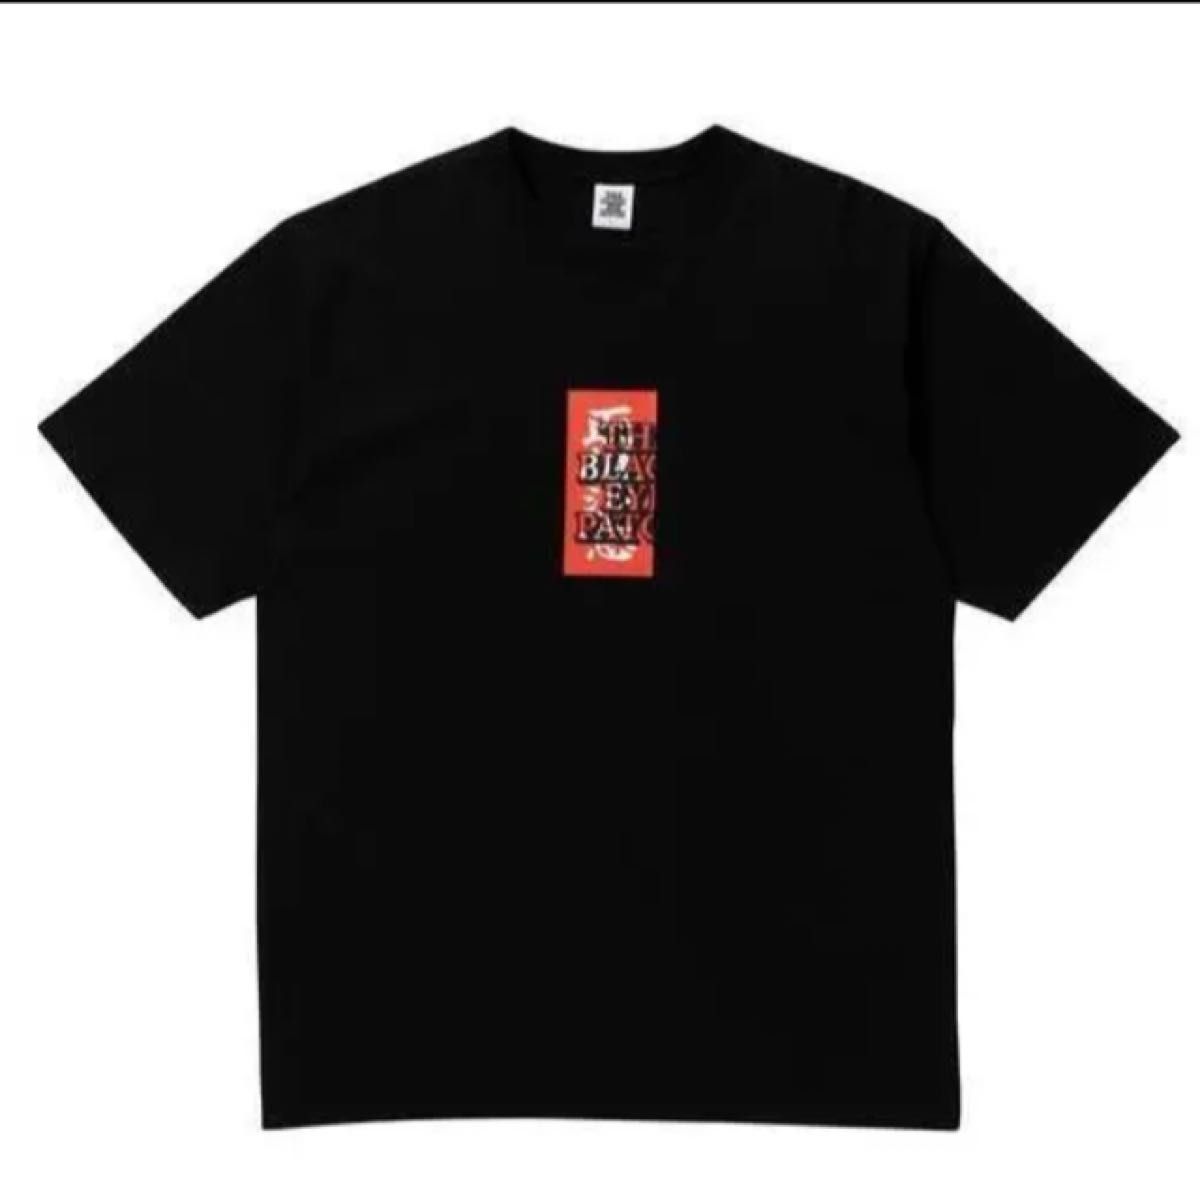 平本蓮着用 XL ブラックアイパッチ 取扱注意 tシャツ 黒-